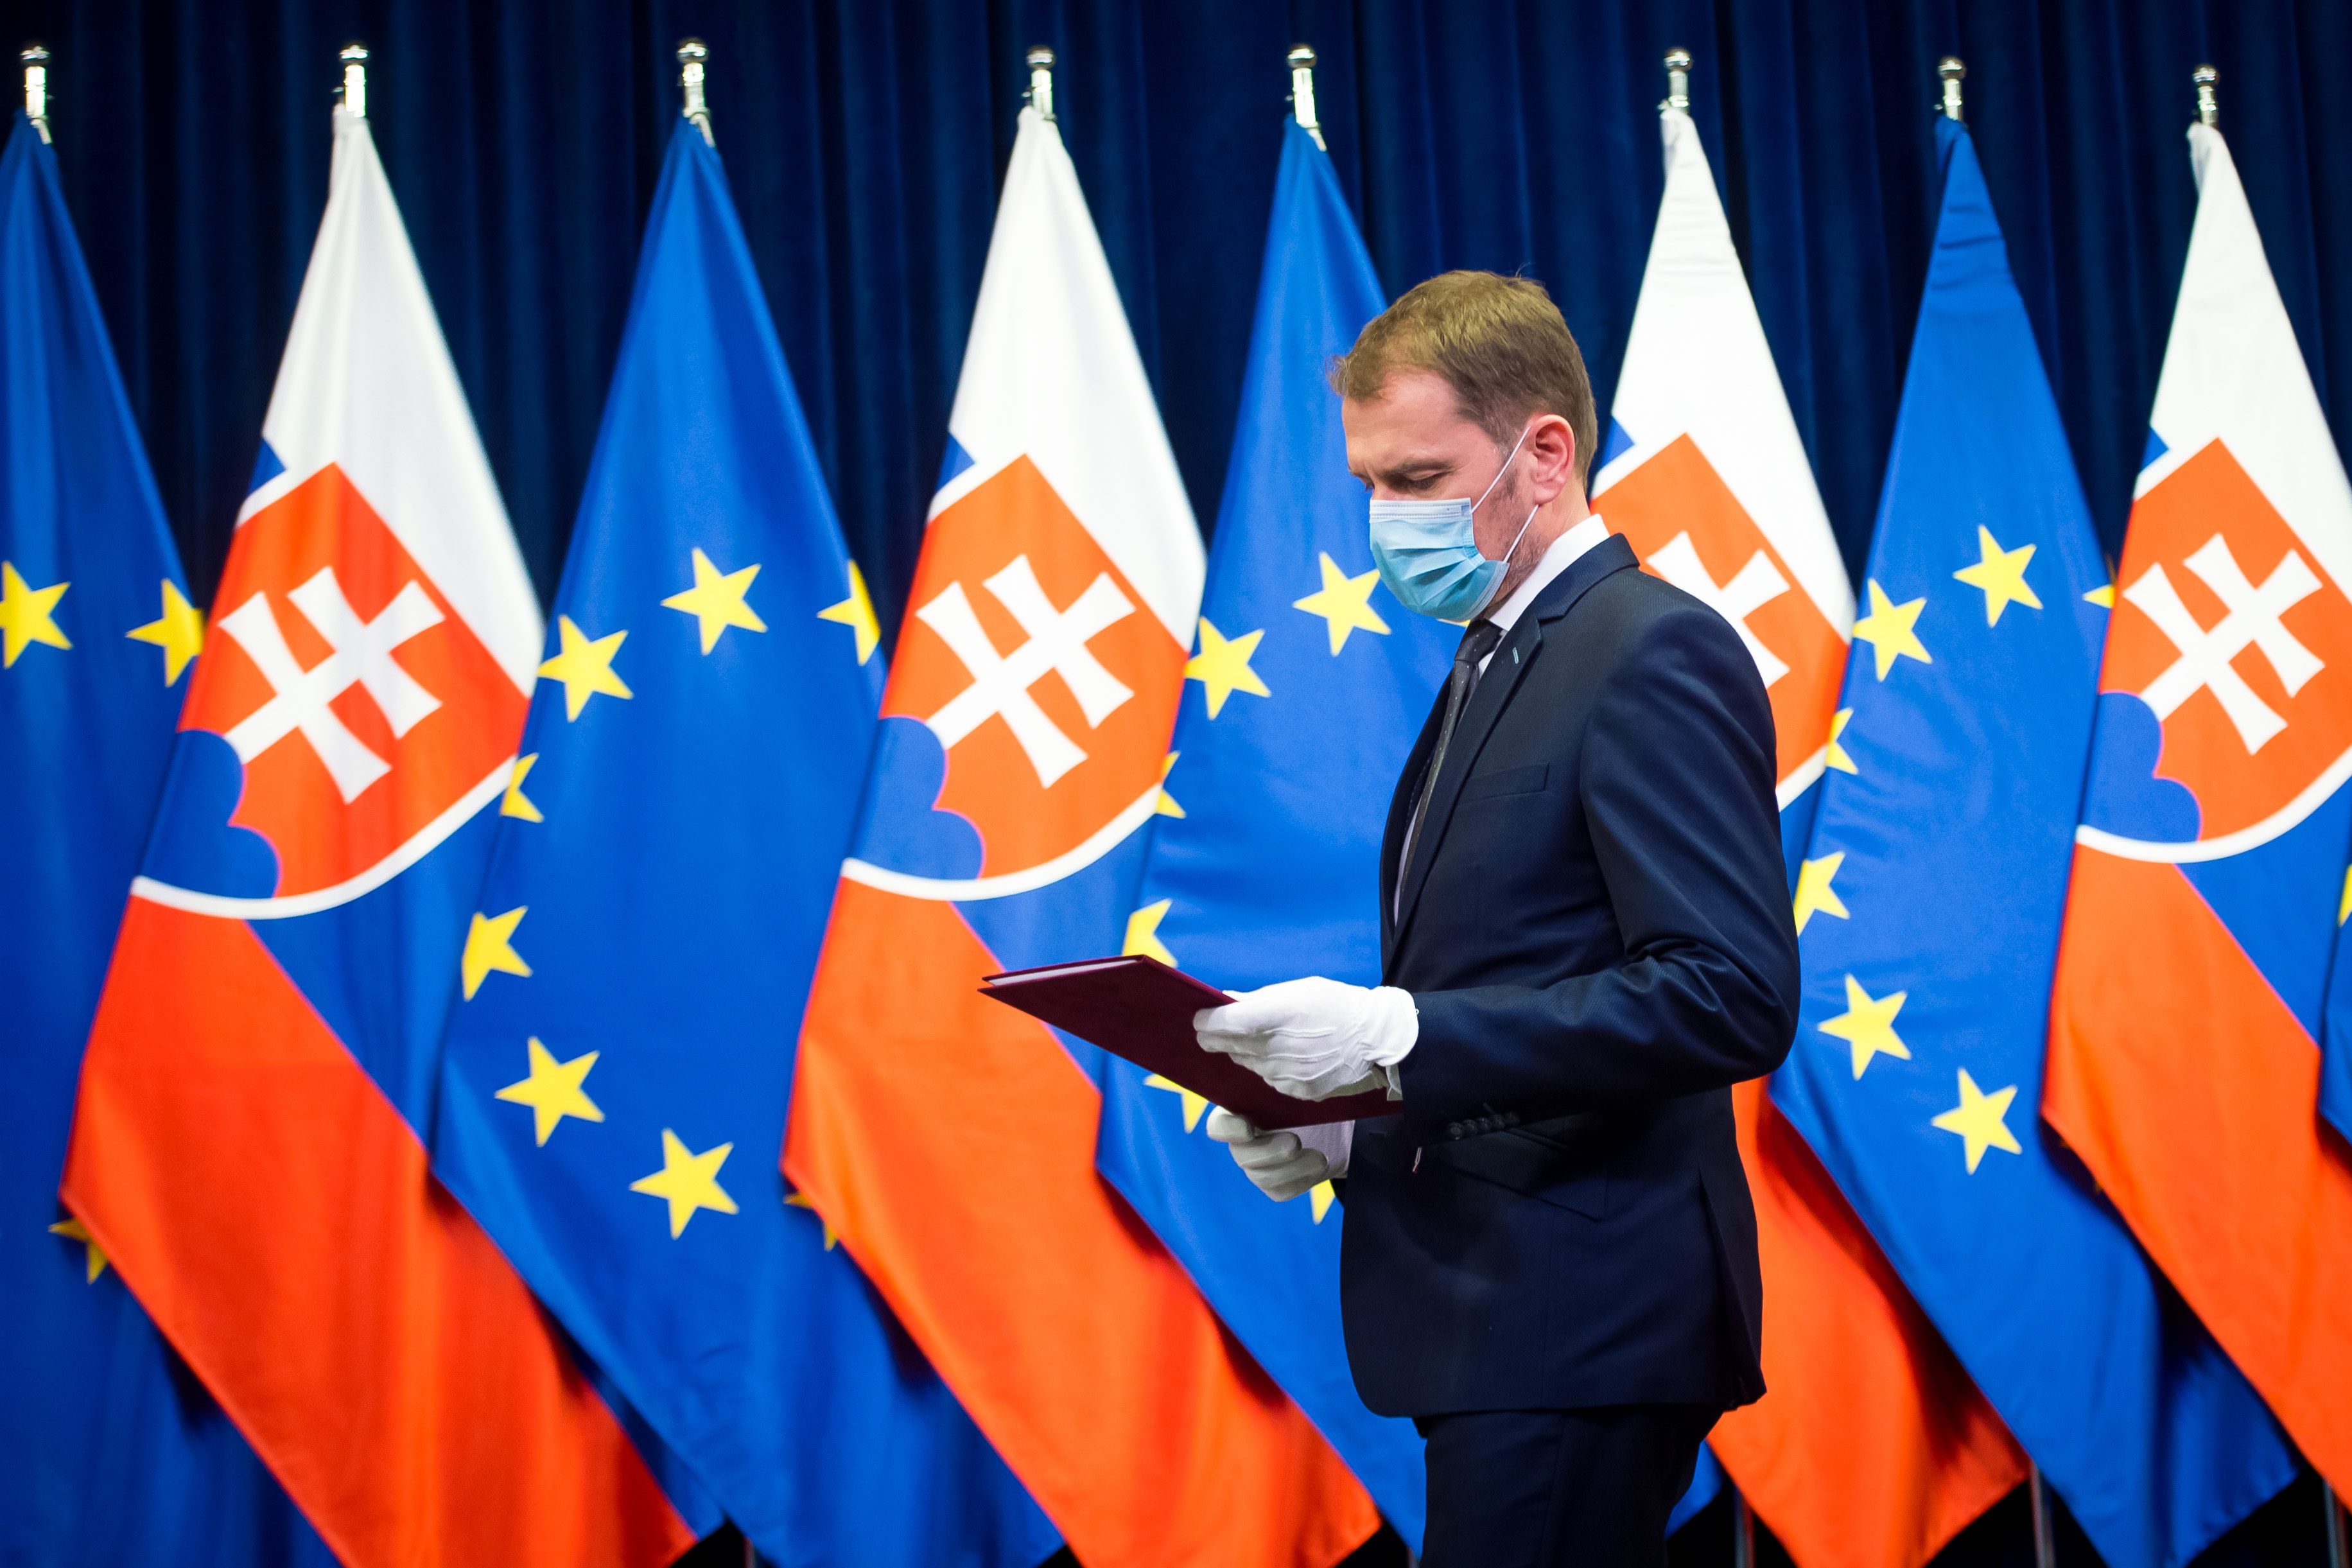 Tolvaj vagyok - ismerte el a szlovák miniszterelnök, aki összeschmittelte a szakdolgozatát